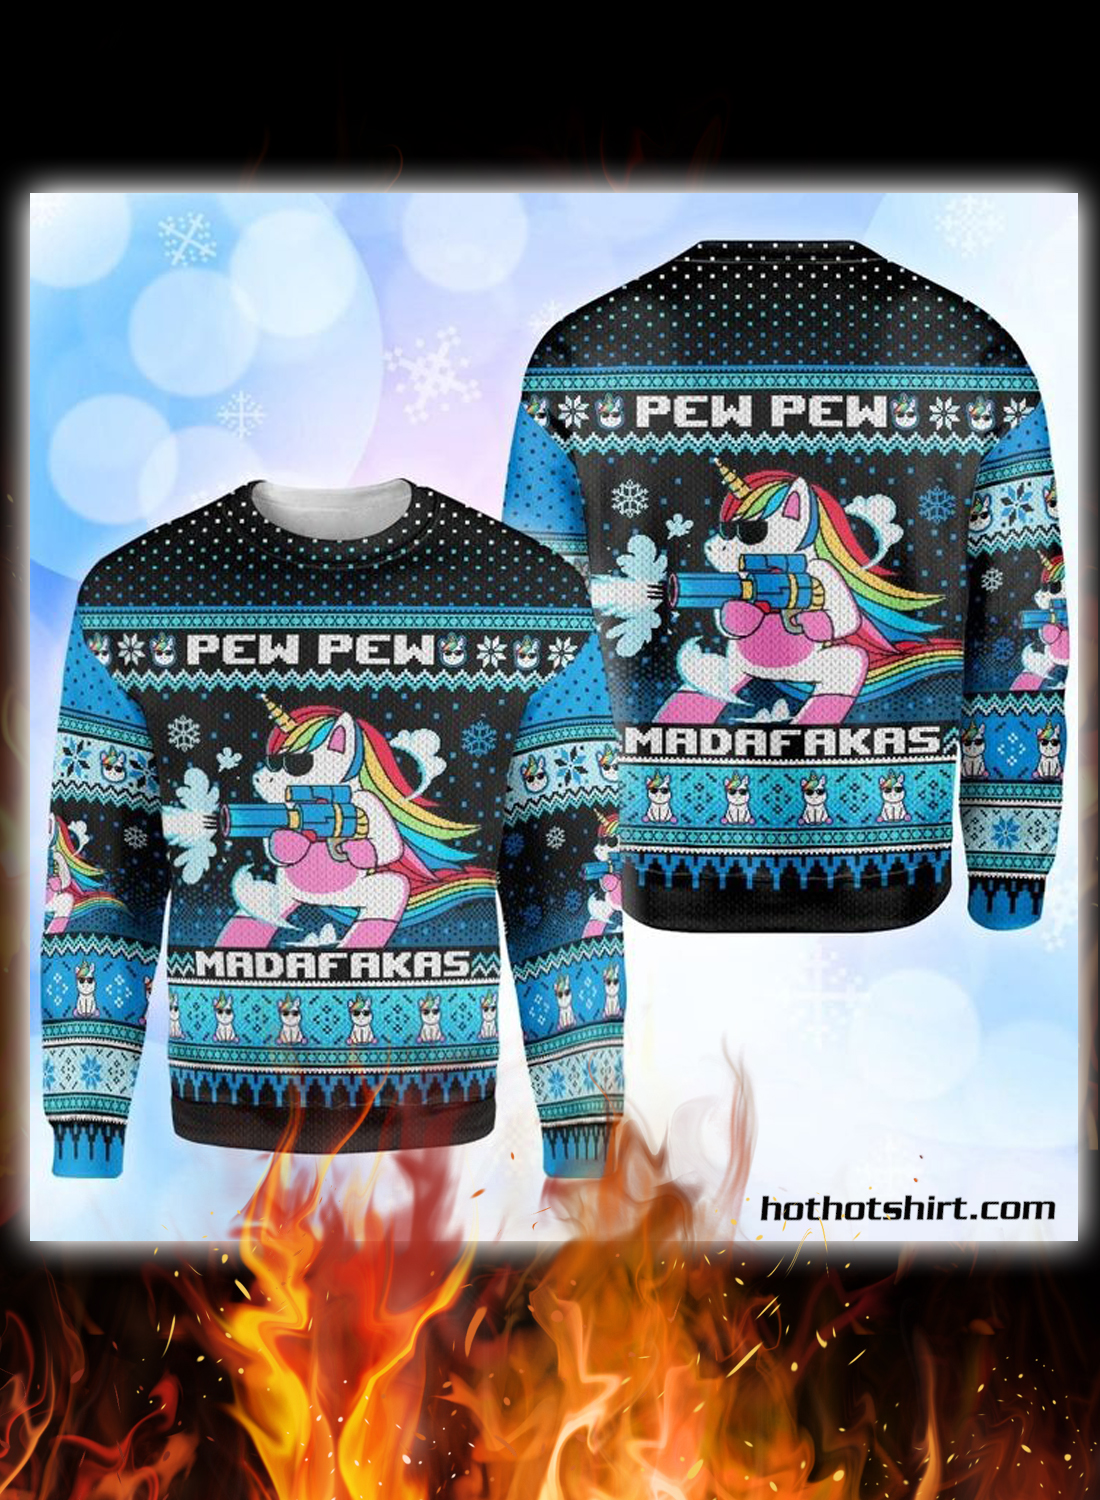 Unicorn pew pew madafakas ugly christmas sweater